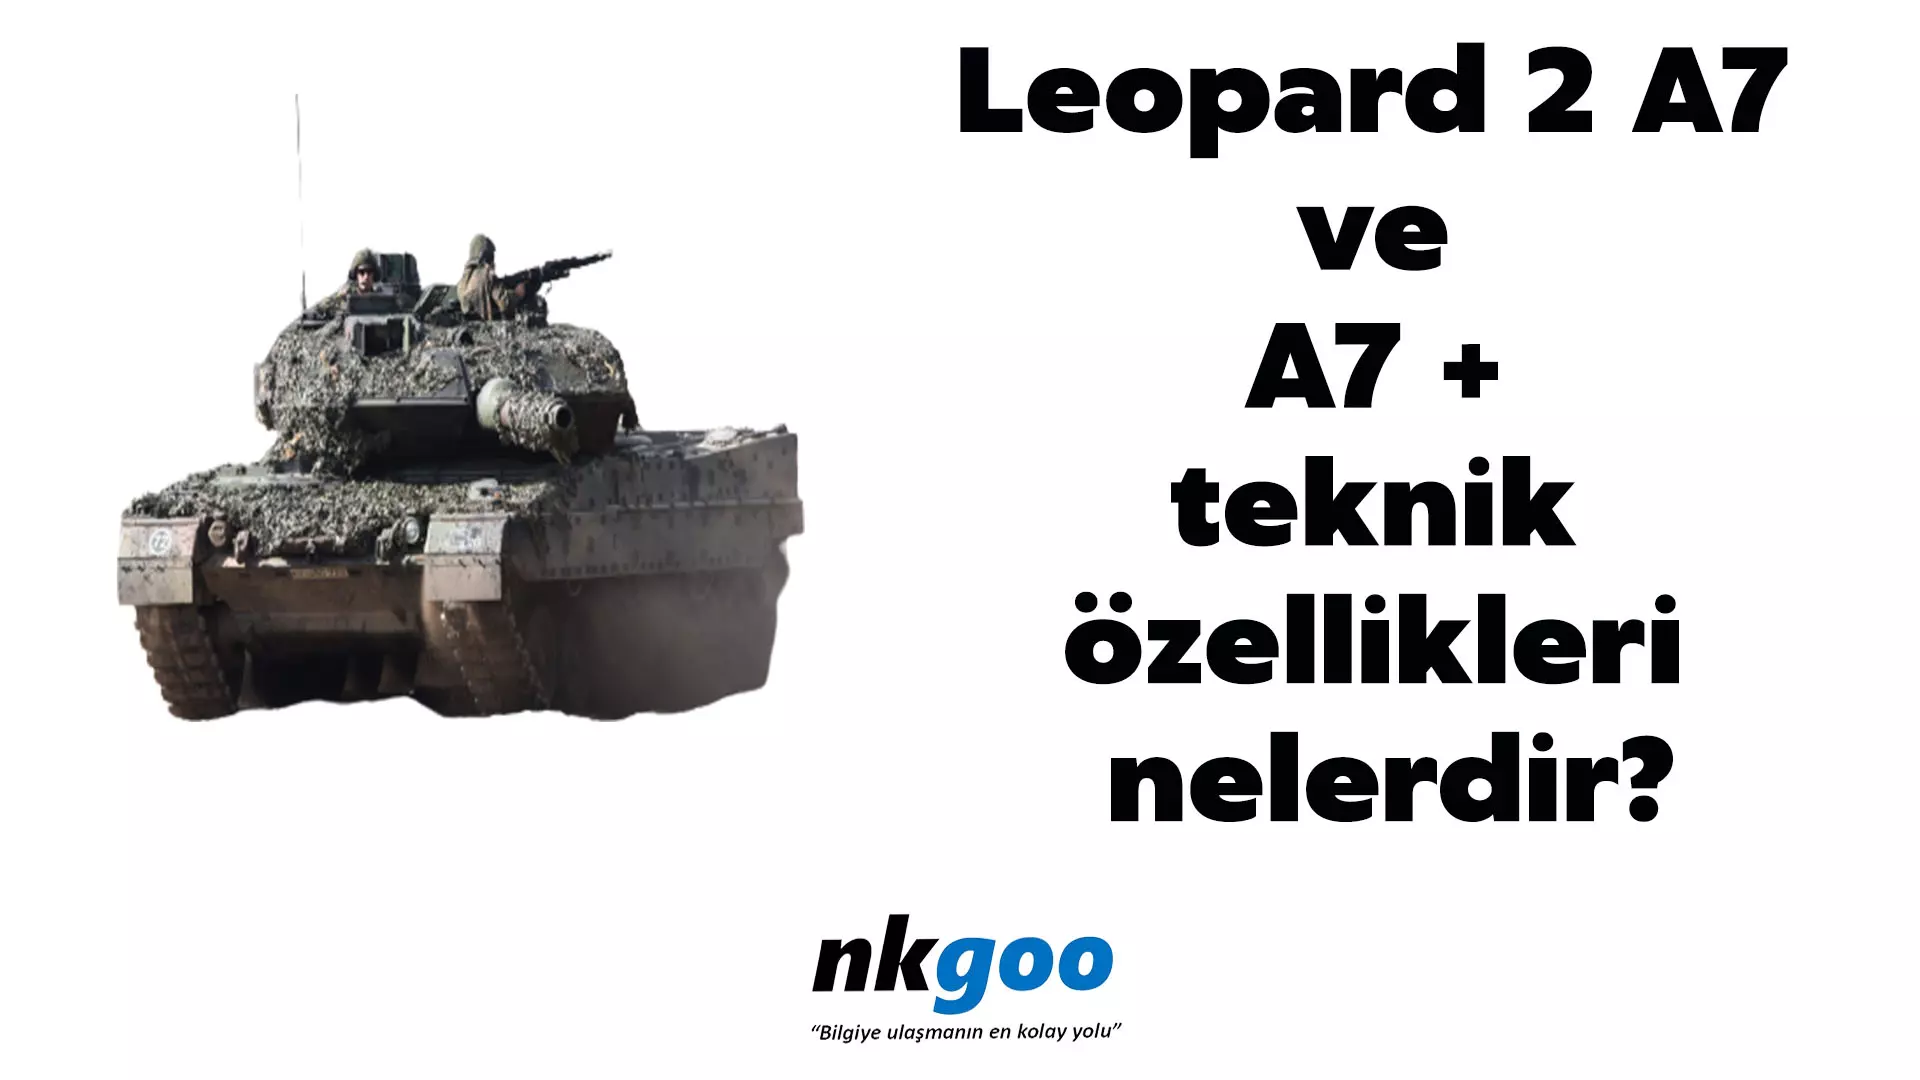 Leopard 2 A7 ve A7+ teknik özellikleri nelerdir?